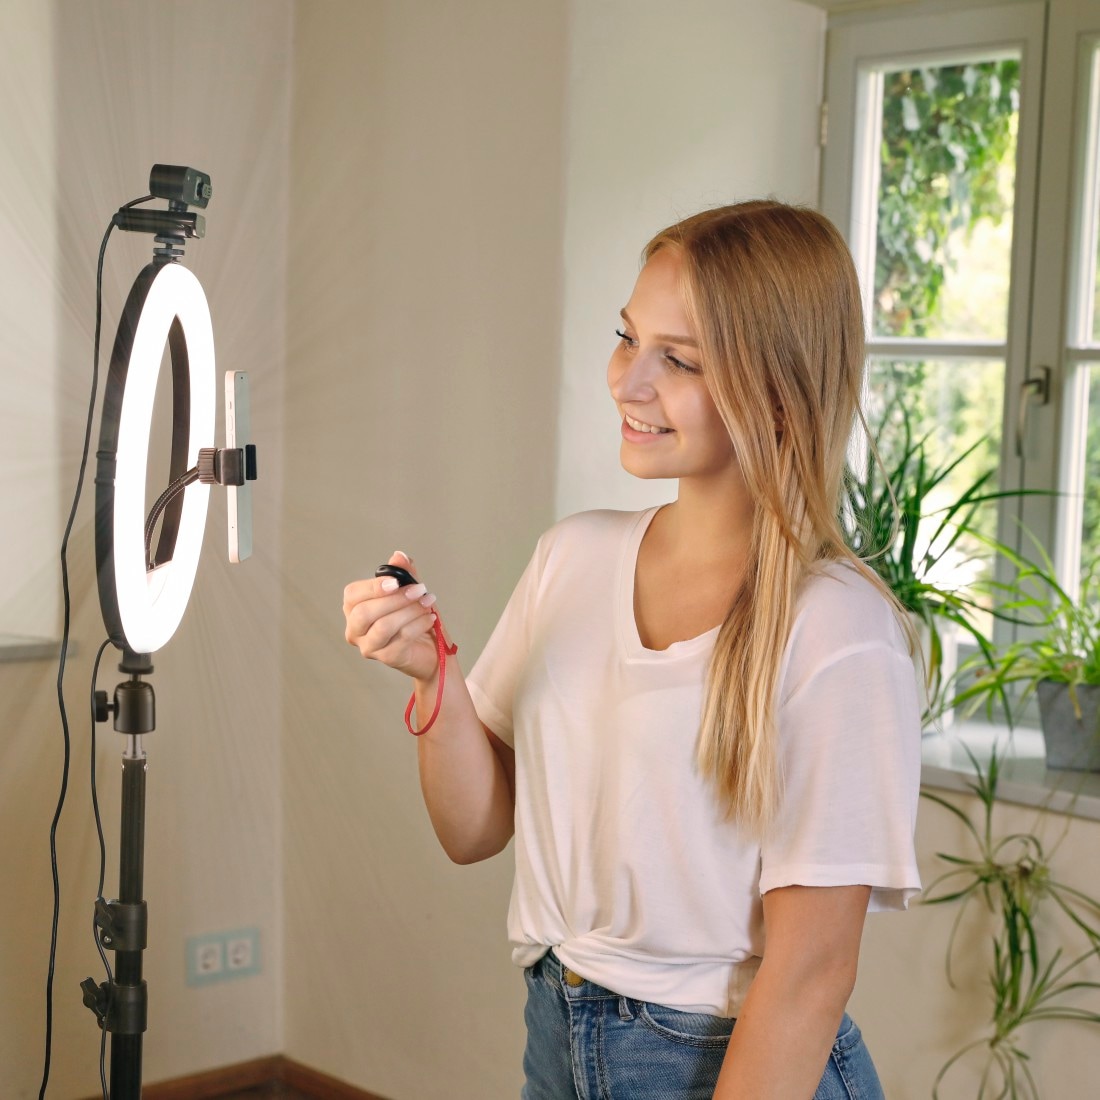 Hama Ringlicht »Handy-Ringlicht mit Stativ für Selfies, Videos (210 cm, 160  LED, 12